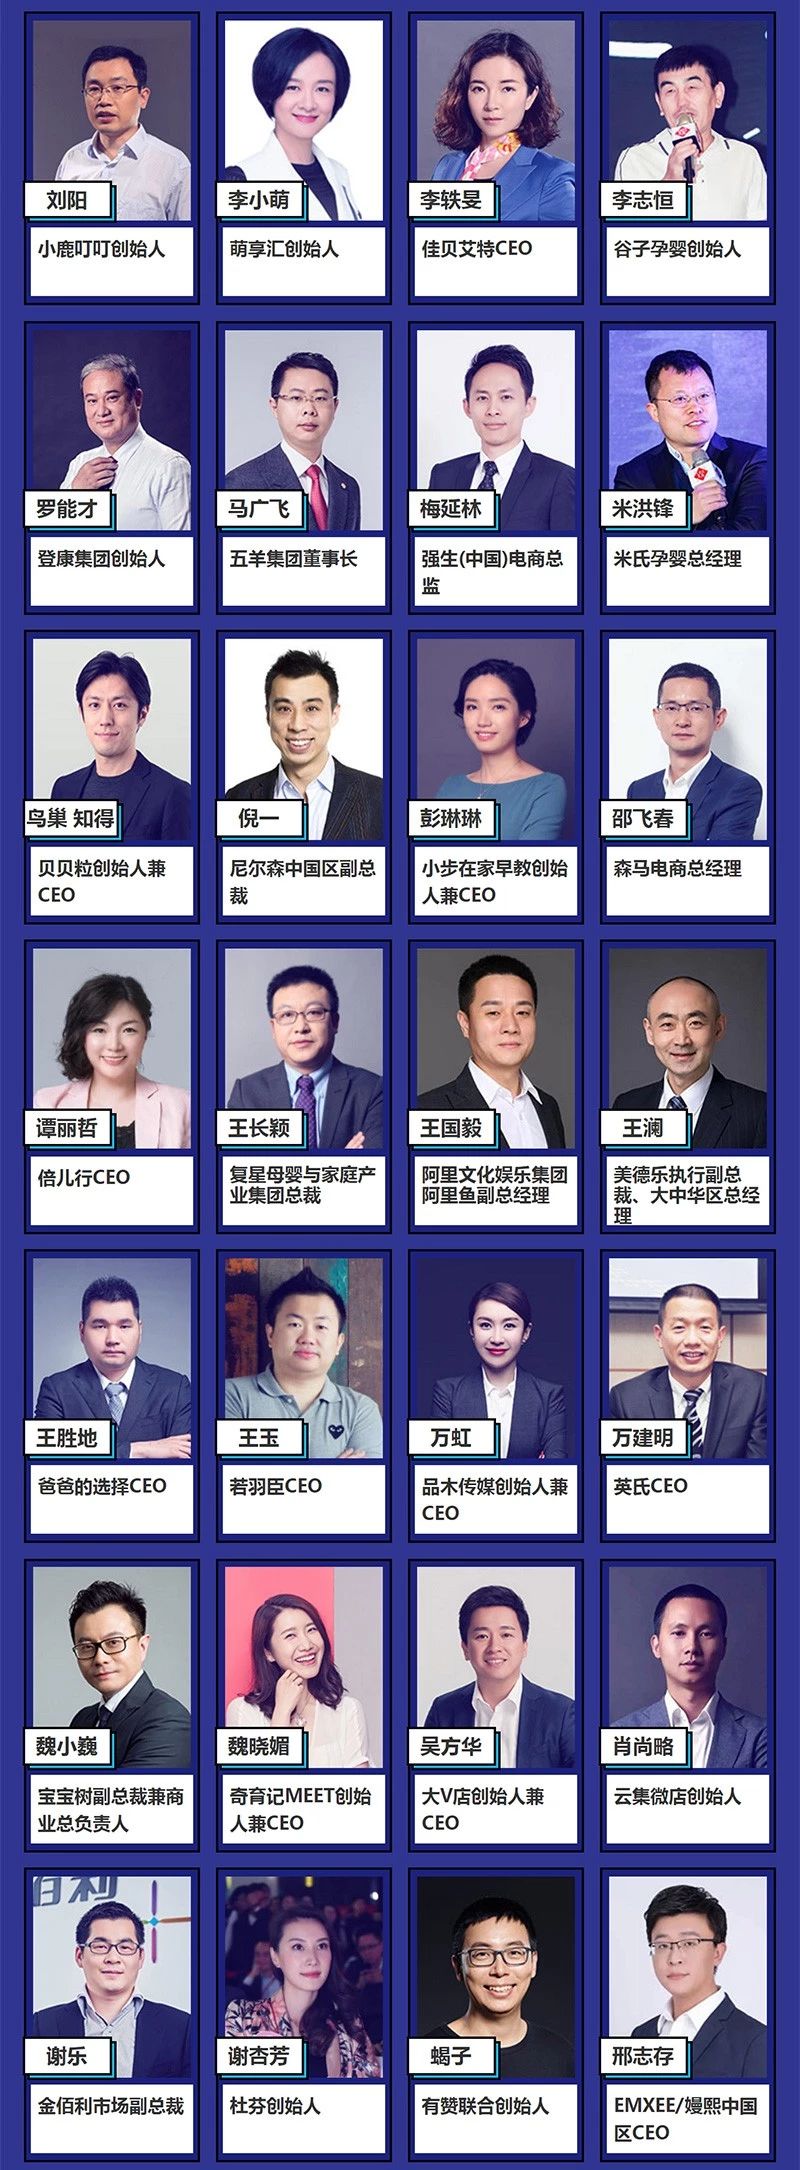 2018中国母婴企业家领袖峰会暨樱桃大赏颁奖盛典